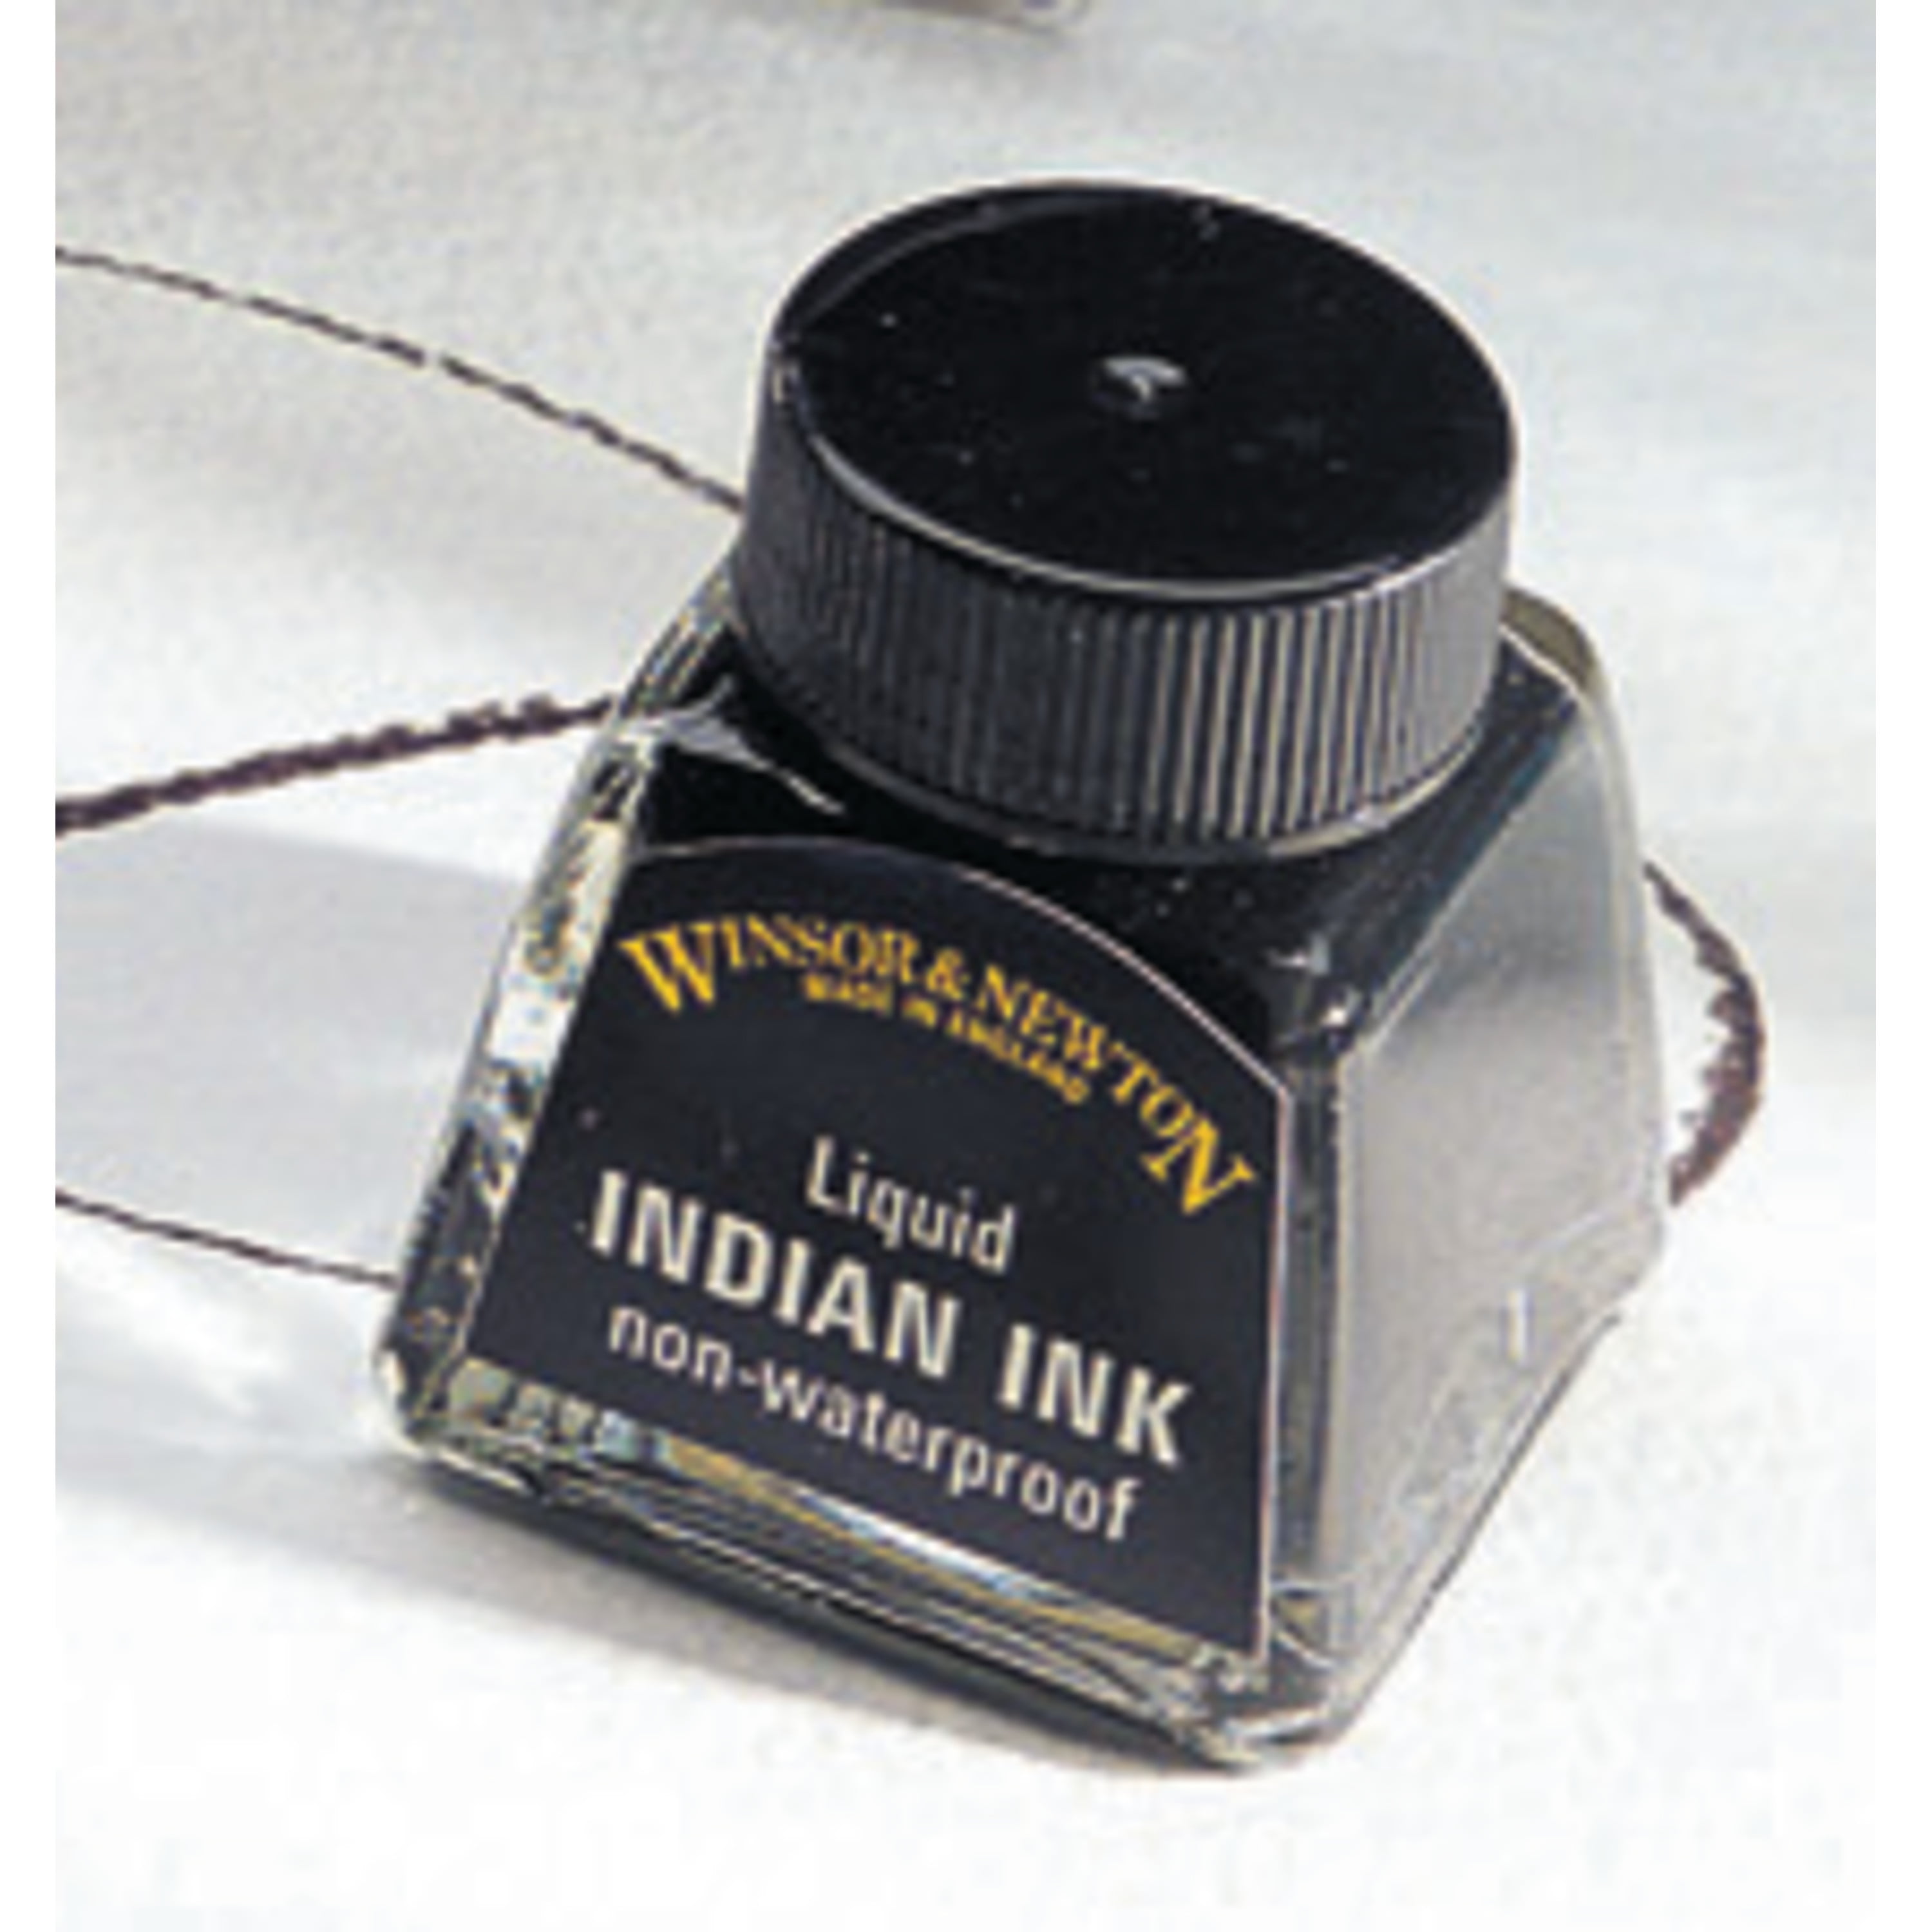 Ink indian Indian Ink